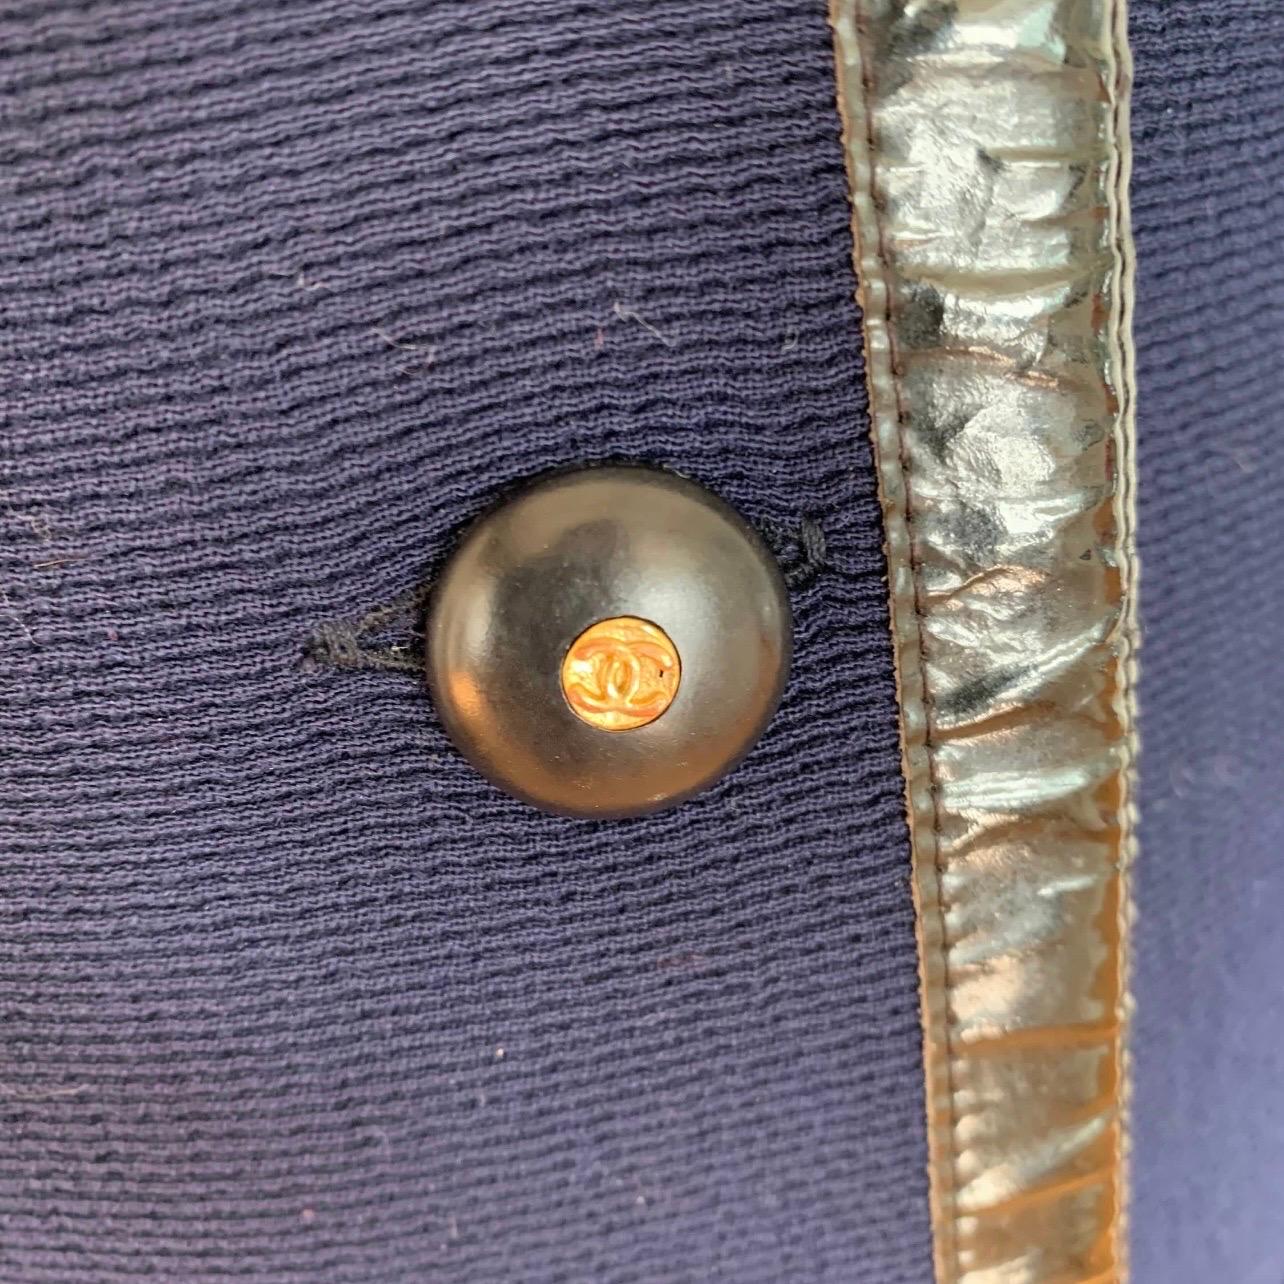 Vintage CHANEL Boutique long manteau en laine bleu et noir avec boutons logo CC.🖤.

Excellent état !

taille : 44/ 4-8 selon l'ajustement souhaité
tissu : laine 
buste : 19
longueur : 38
manche 23,5

Manteau en laine bleu et noir, doté de 12